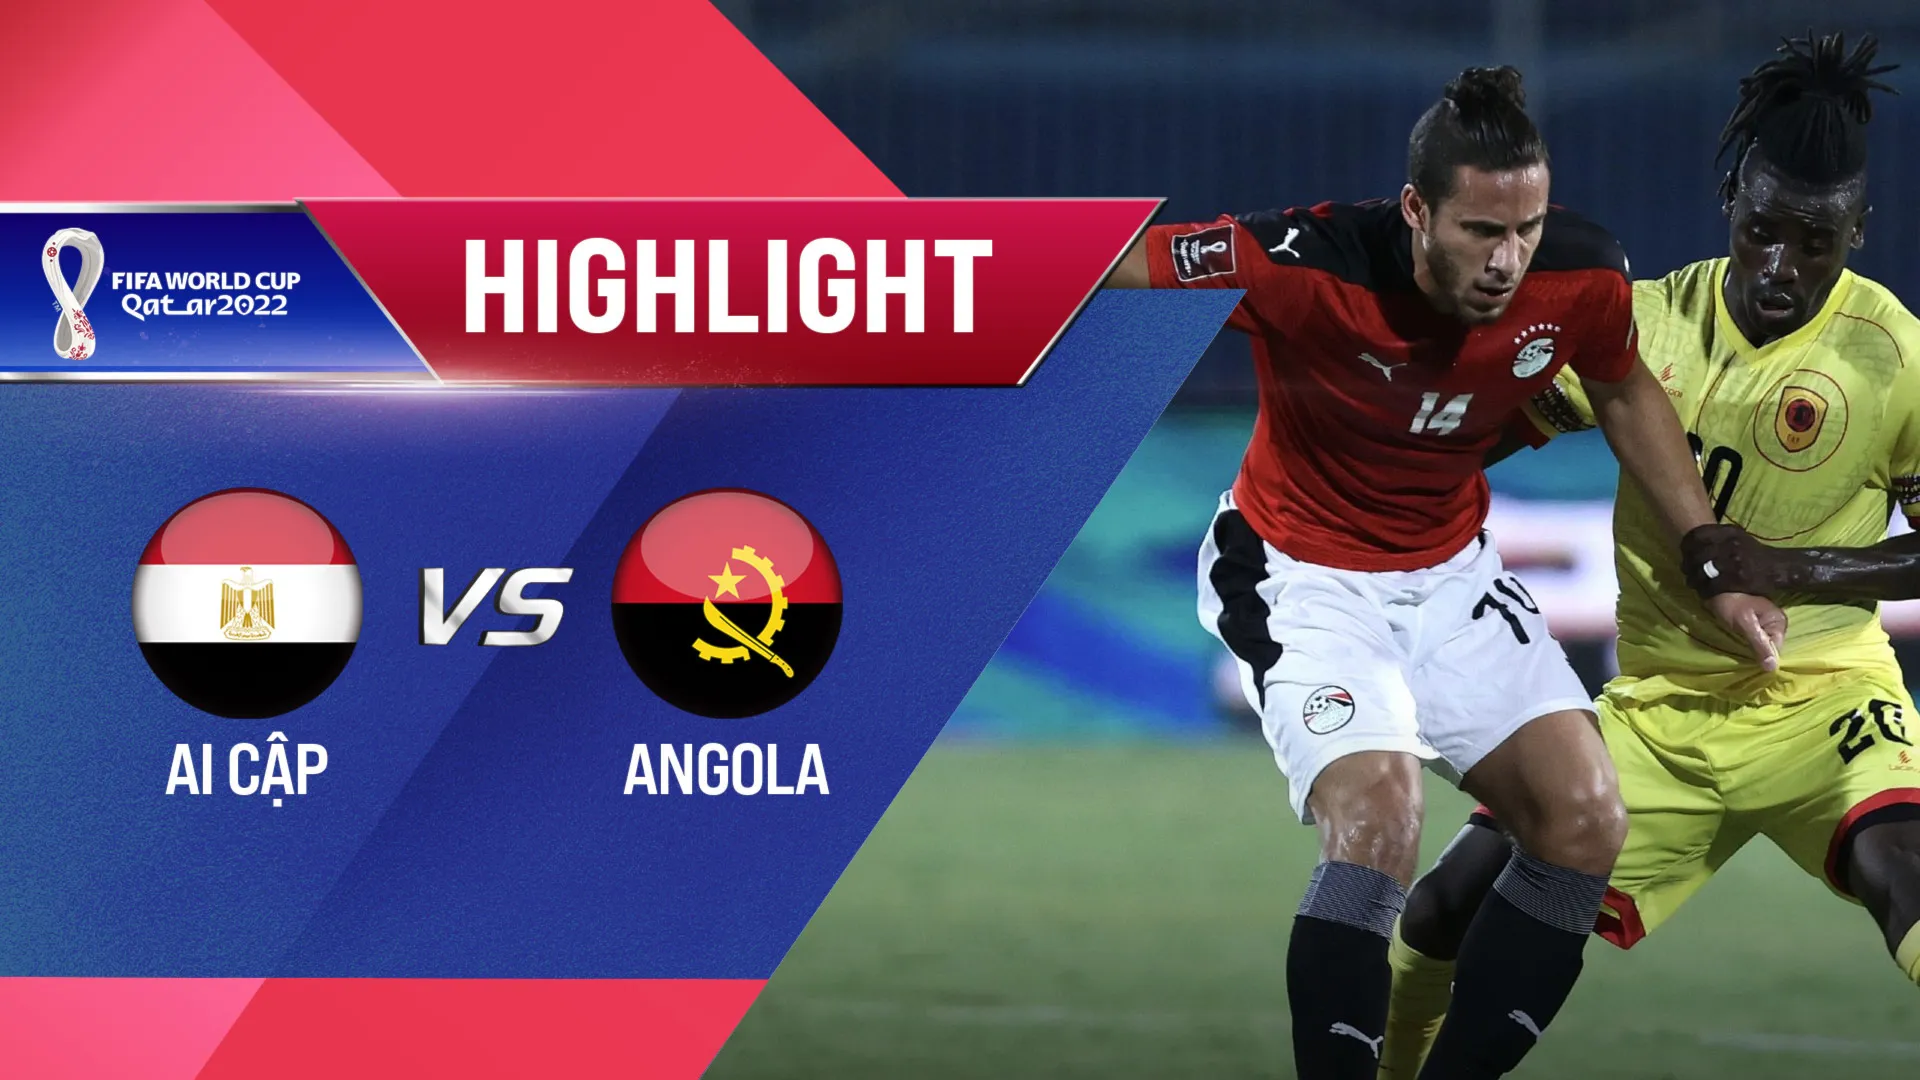 Highlights Ai Cập - Angola (Vòng Loại World Cup 2022 - Khu vực châu Phi)